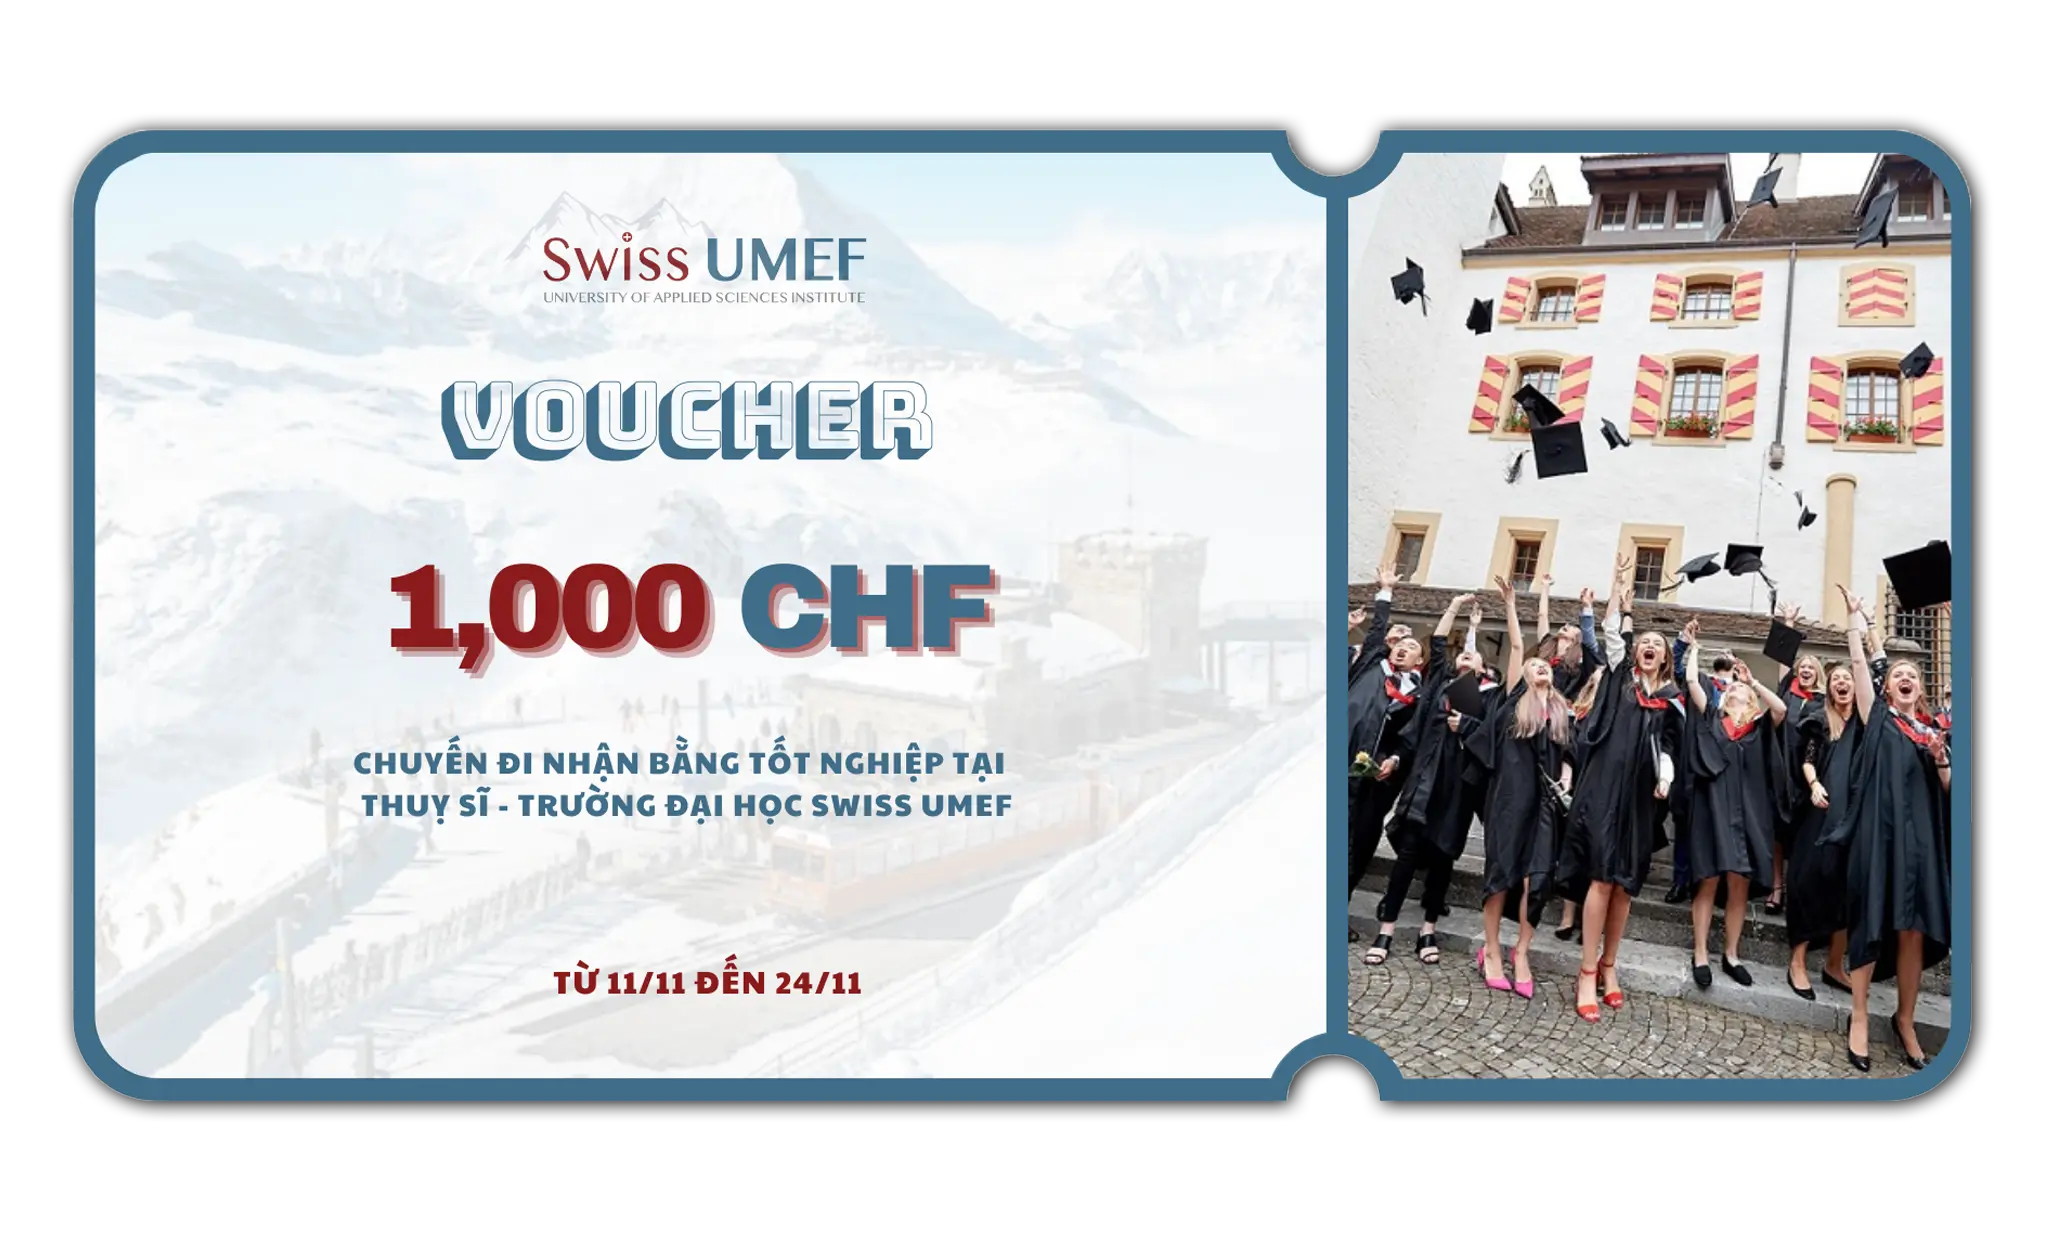 voucher 1000CHF cho chuyến đi nhận bằng tại trường Swiss UMEF